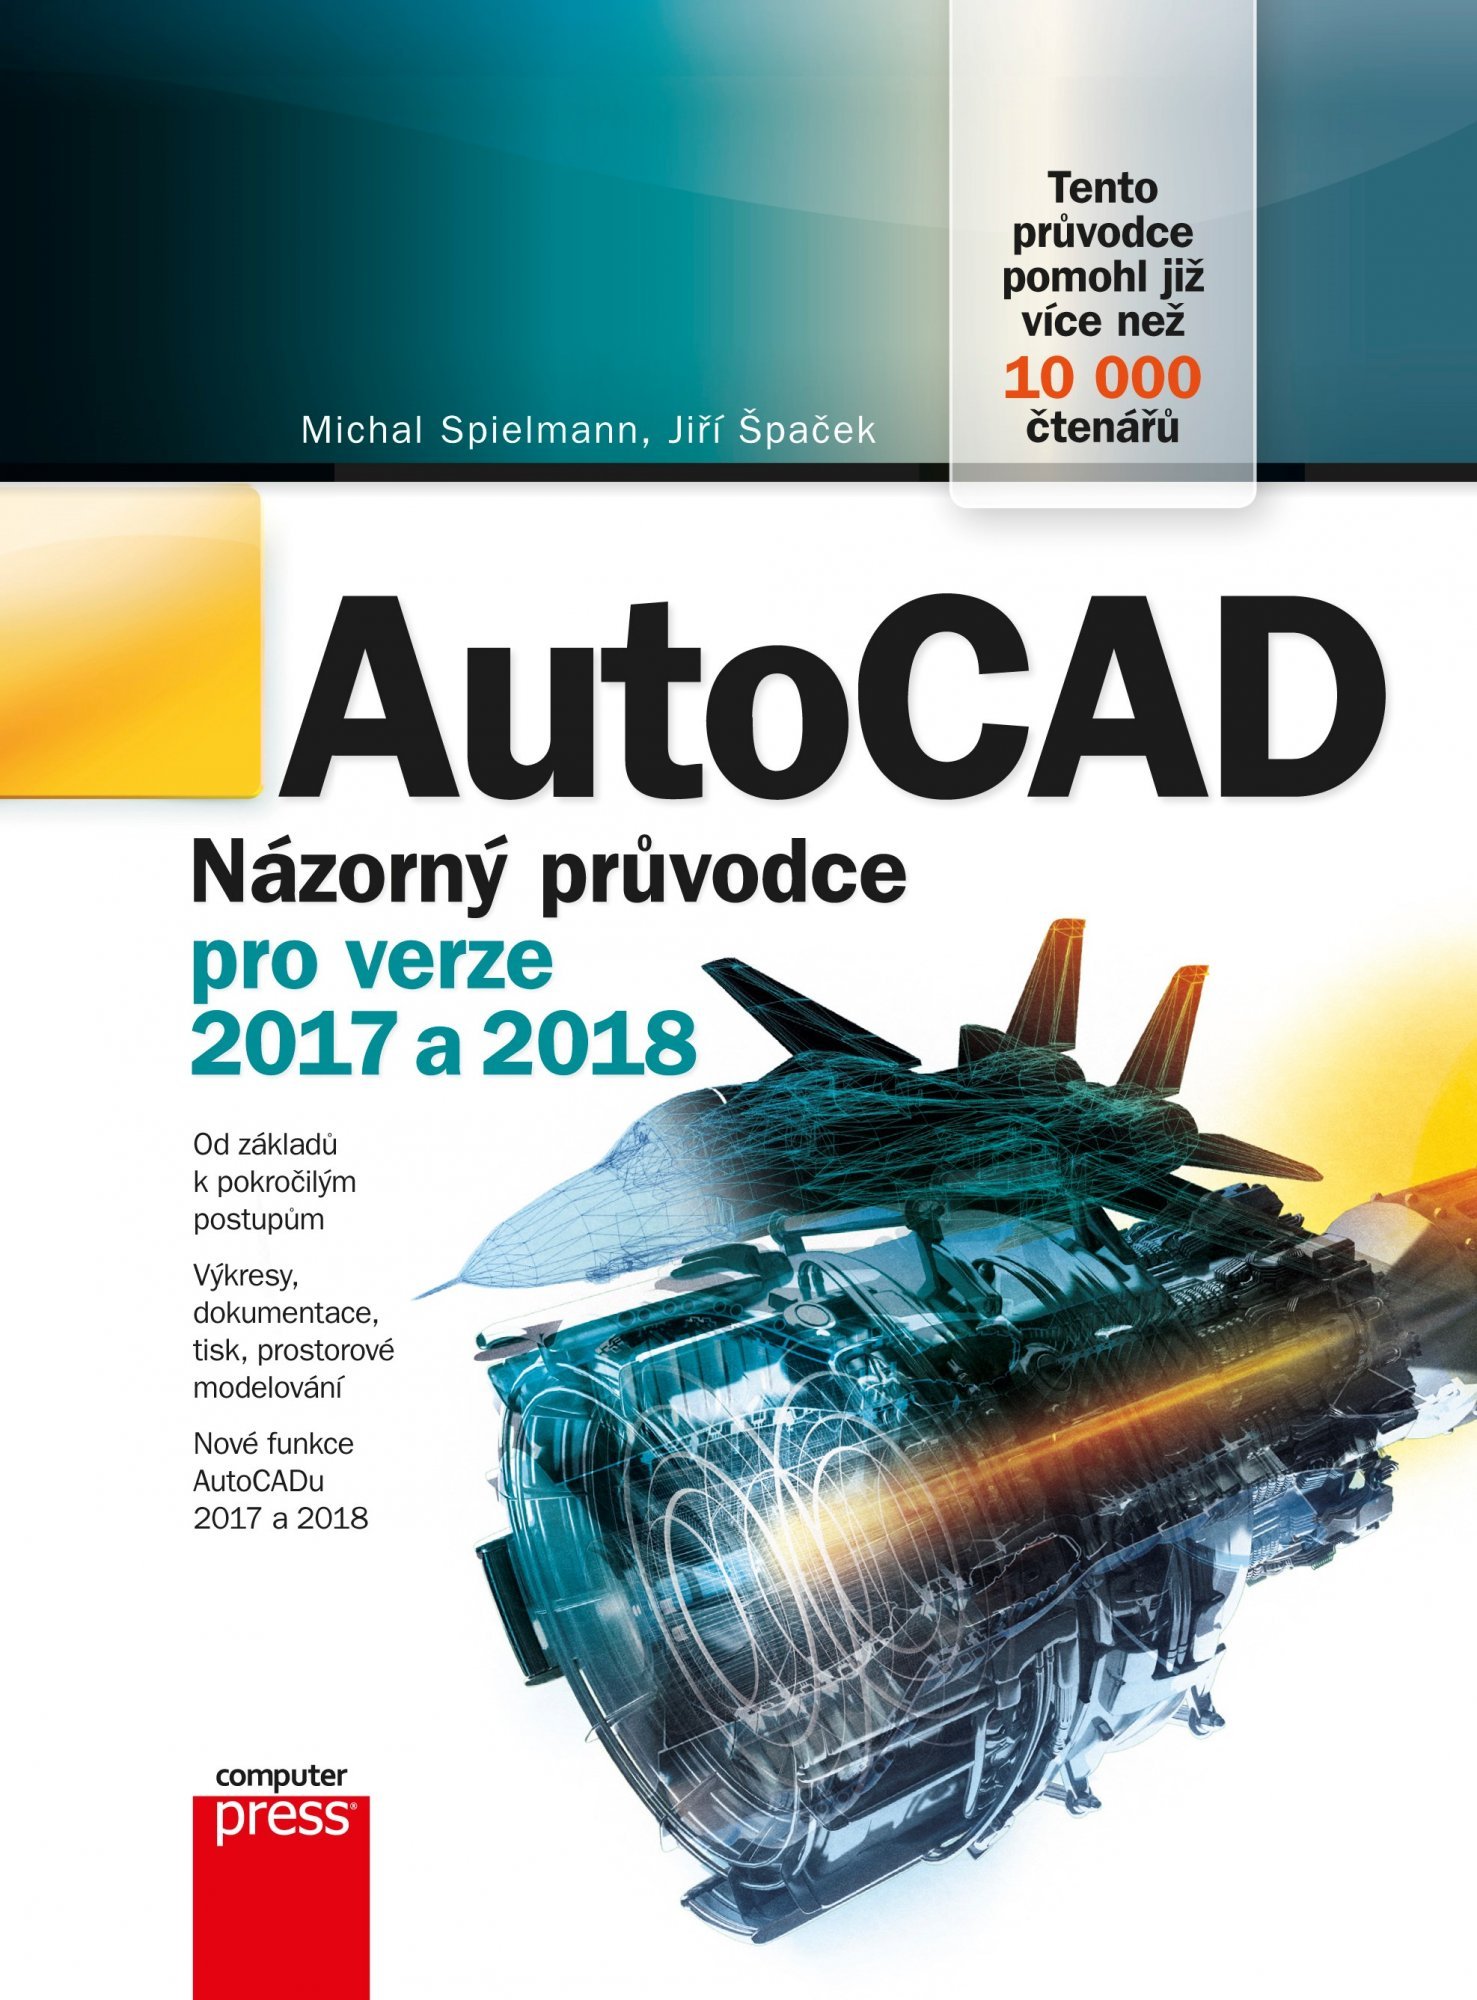 AutoCAD - Názorný průvodce pro verze 2017 a 2018 - Michal Spielmann